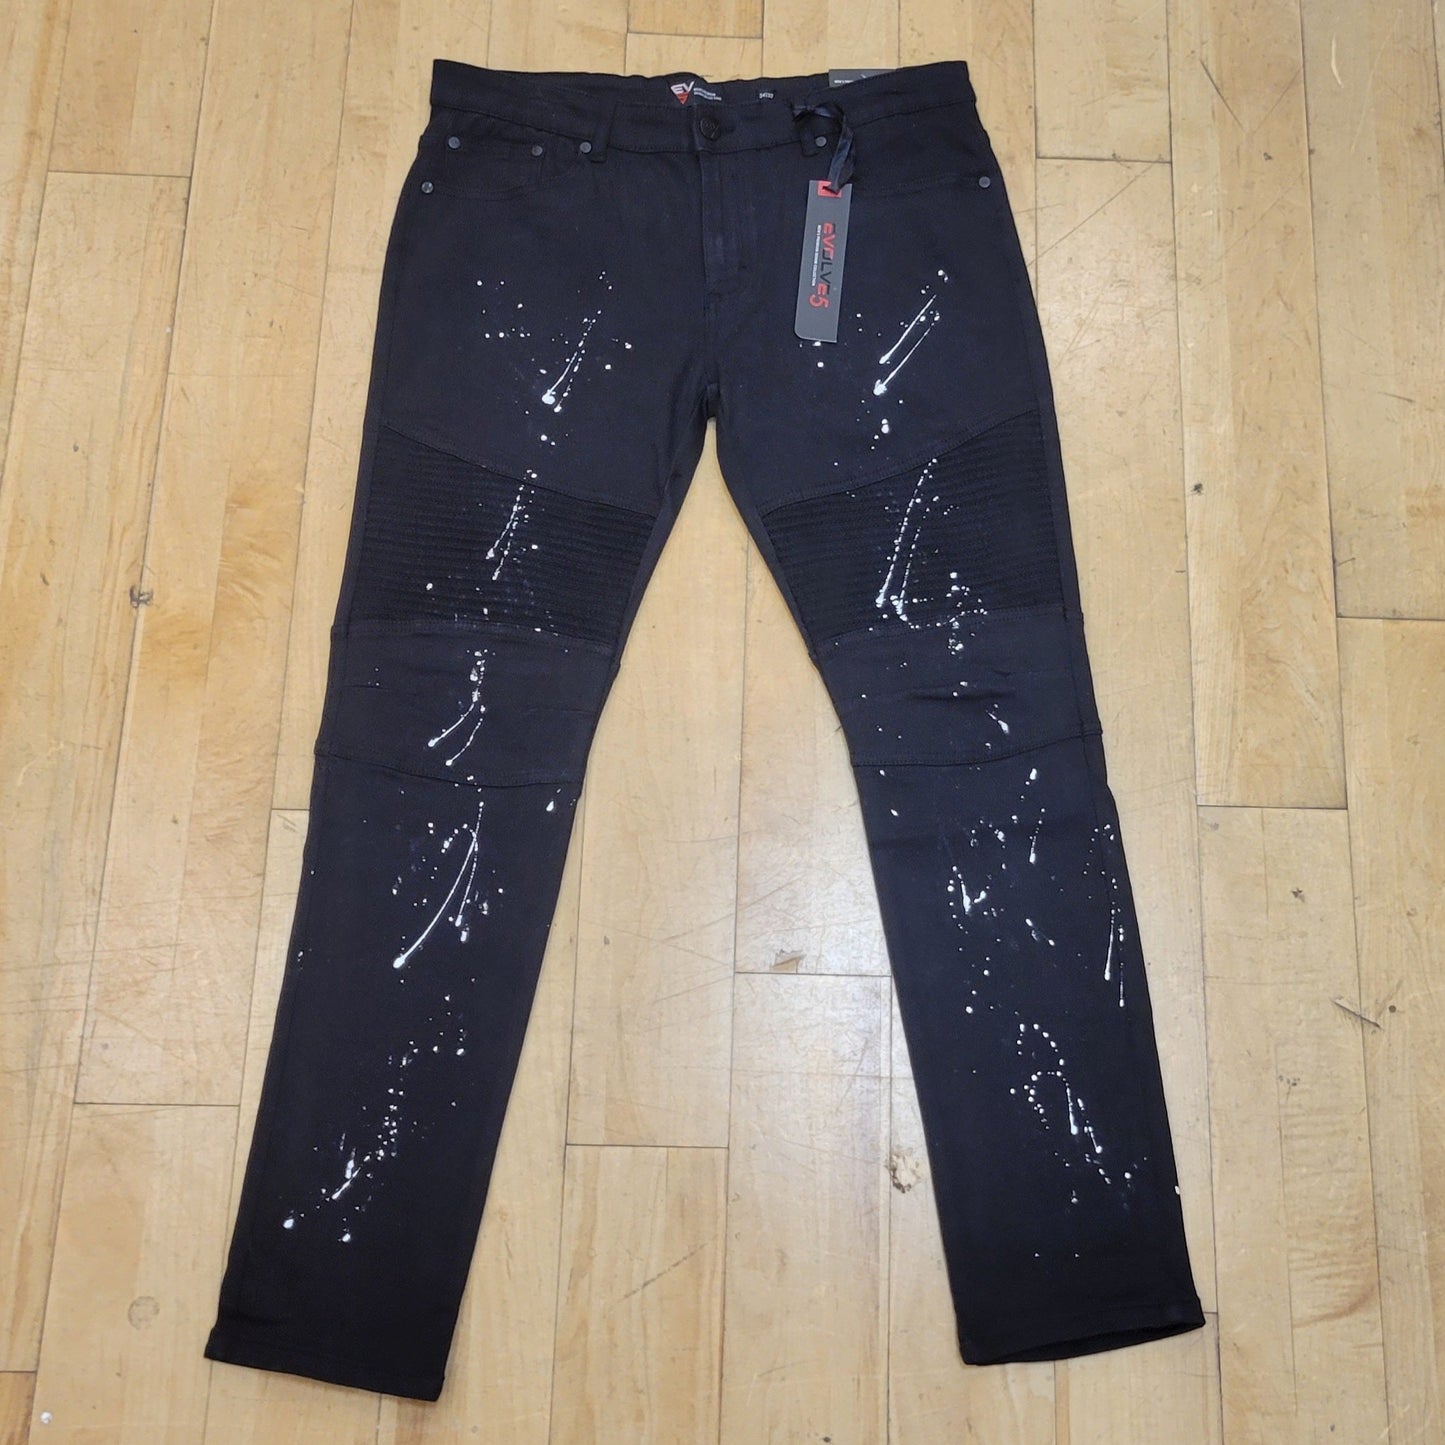 Black Jeans W/ White Splatter